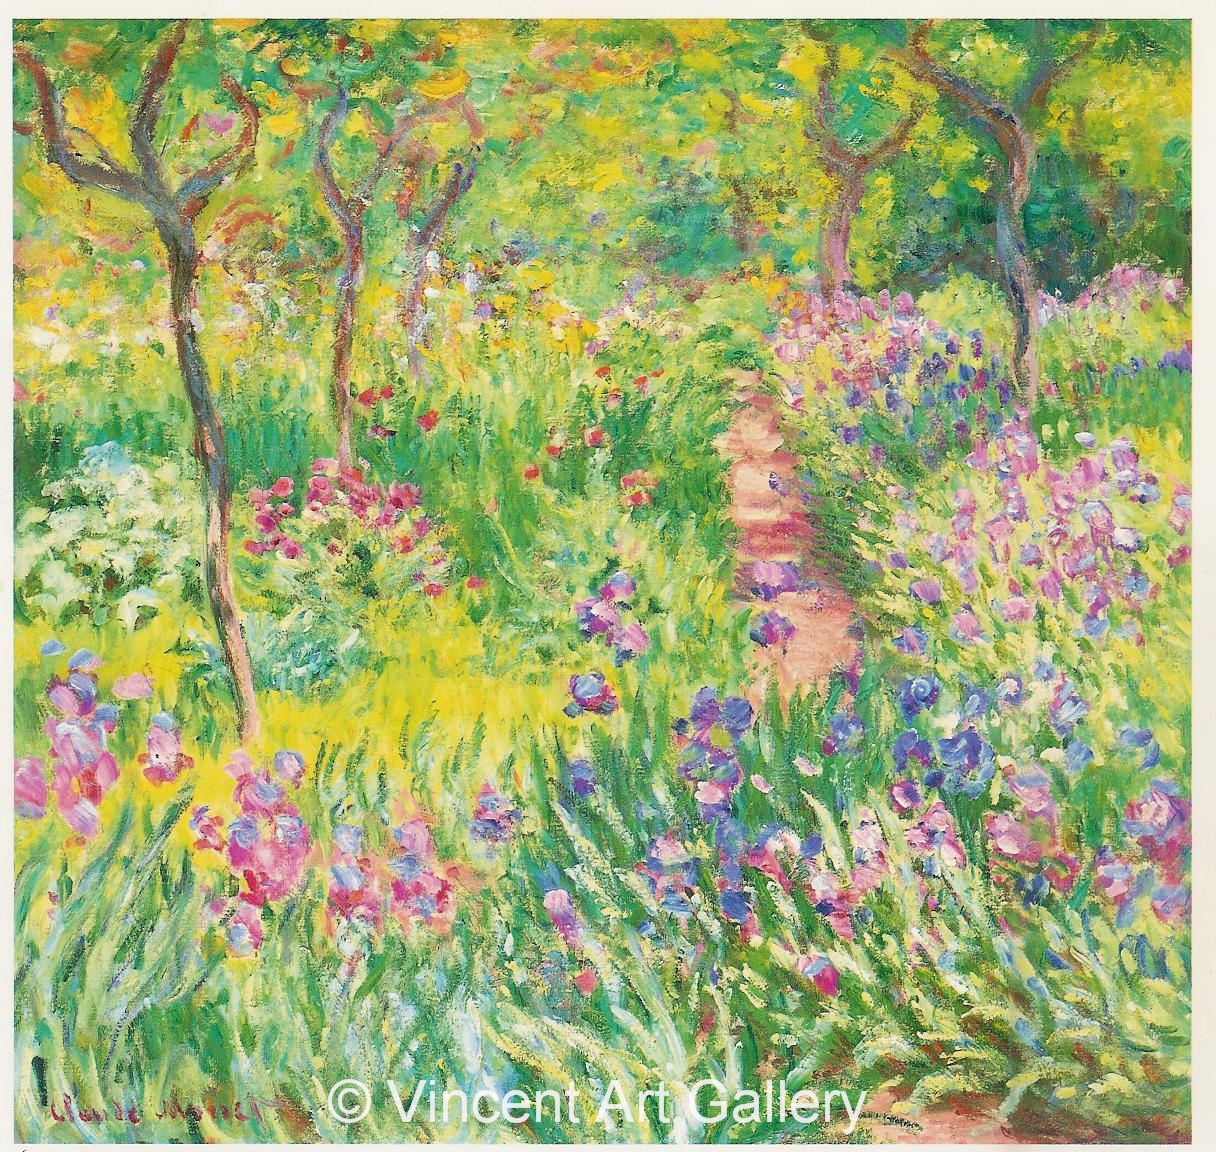 A591, MONET, The Iris Garden at Giverny